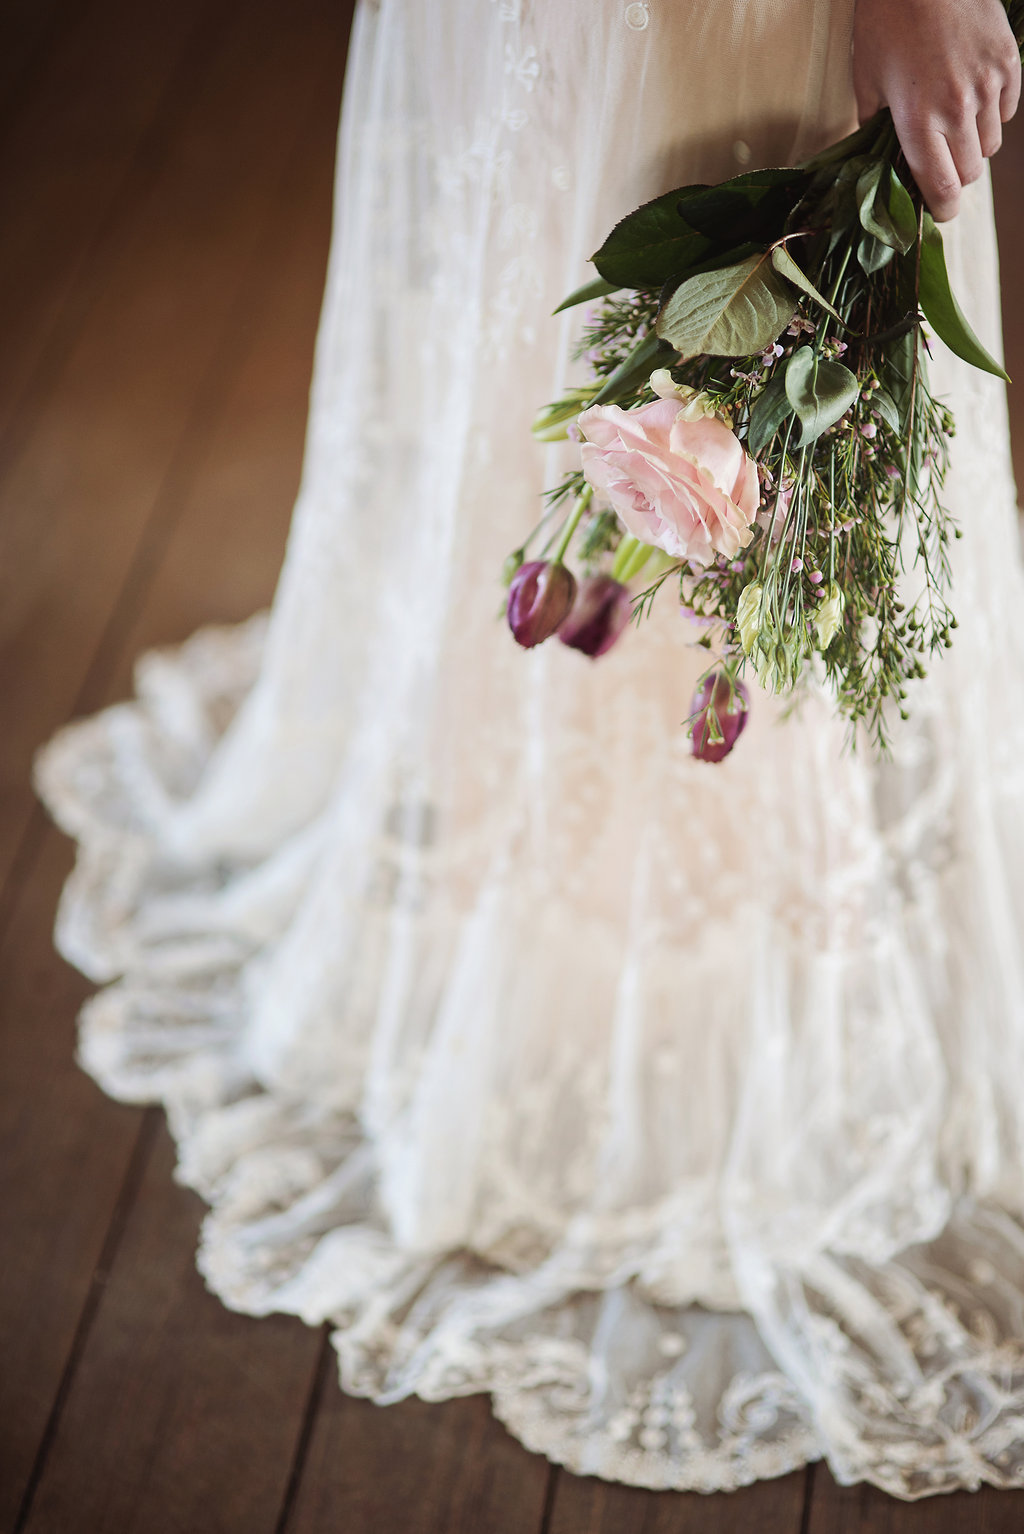 A Joy Forever - Beautiful Bridal Inspiration with Edwardian Era Wedding Dresses